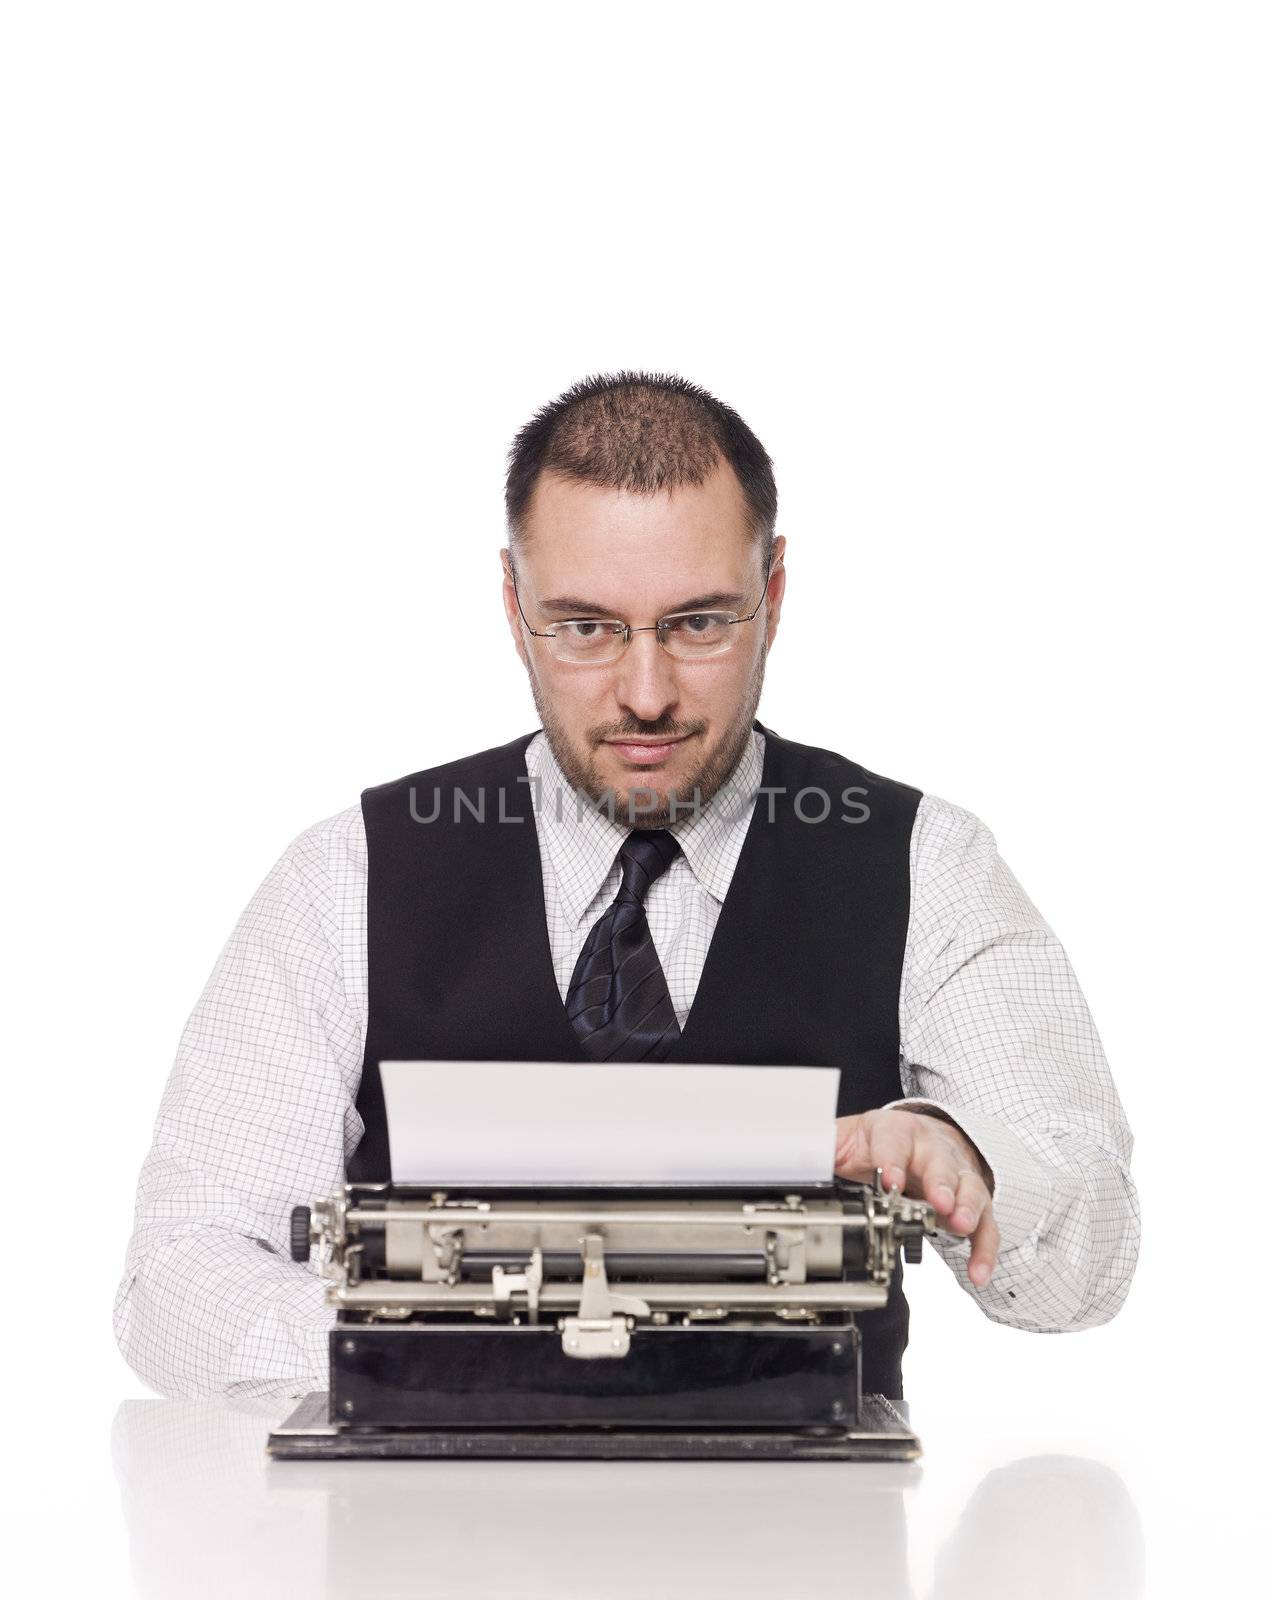 Man and a vintage typewriter